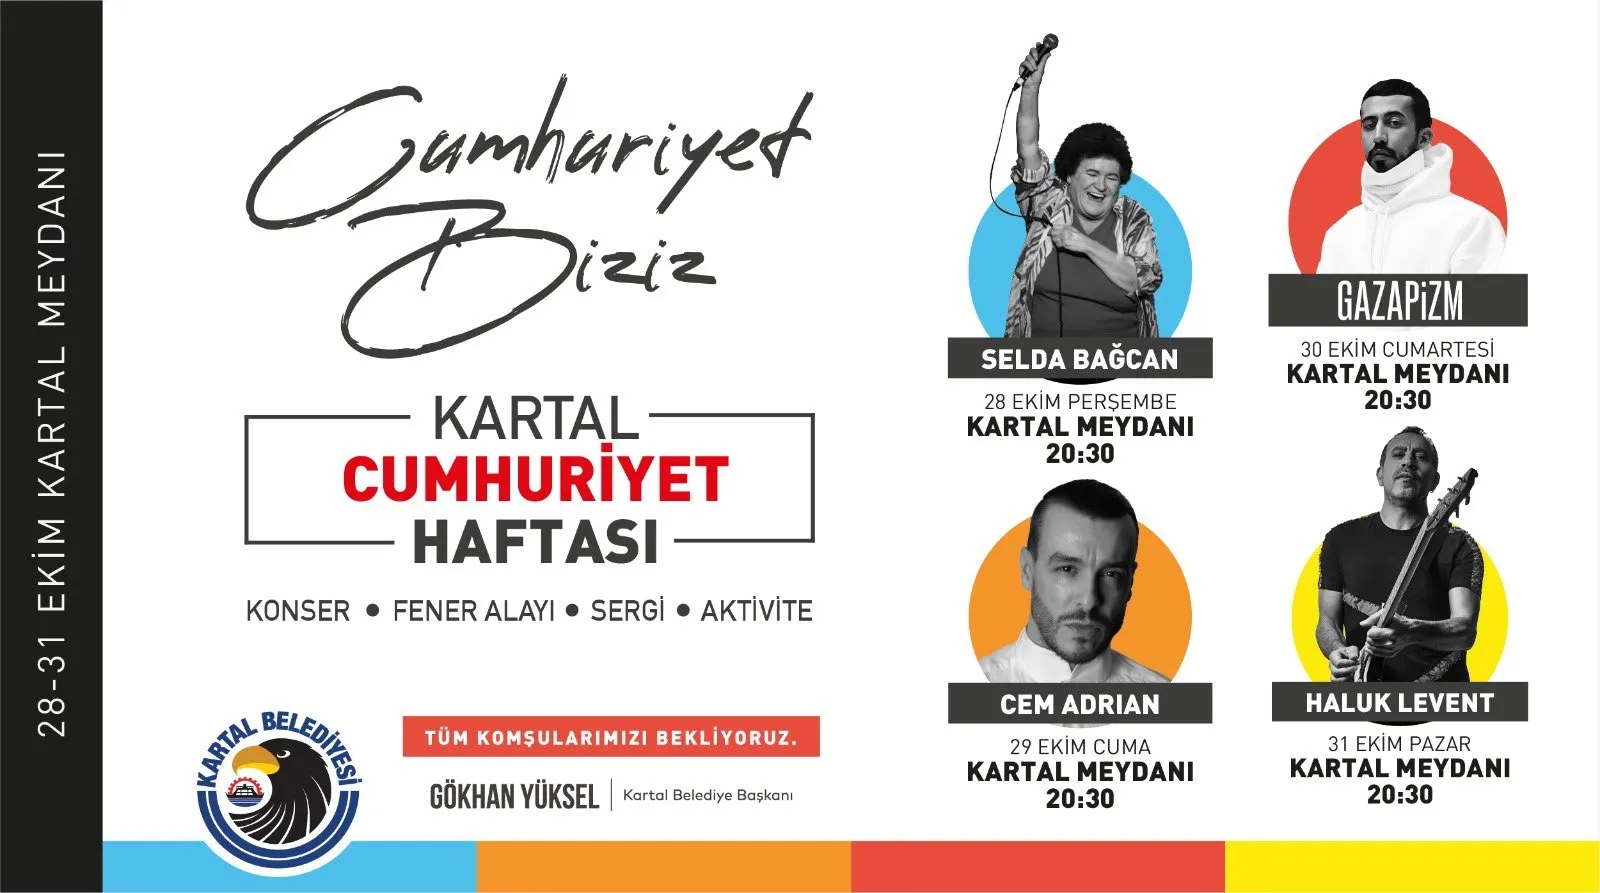 Selda Bağcan - 29 Ekim Cumhuriyet Bayramı Özel Konseri